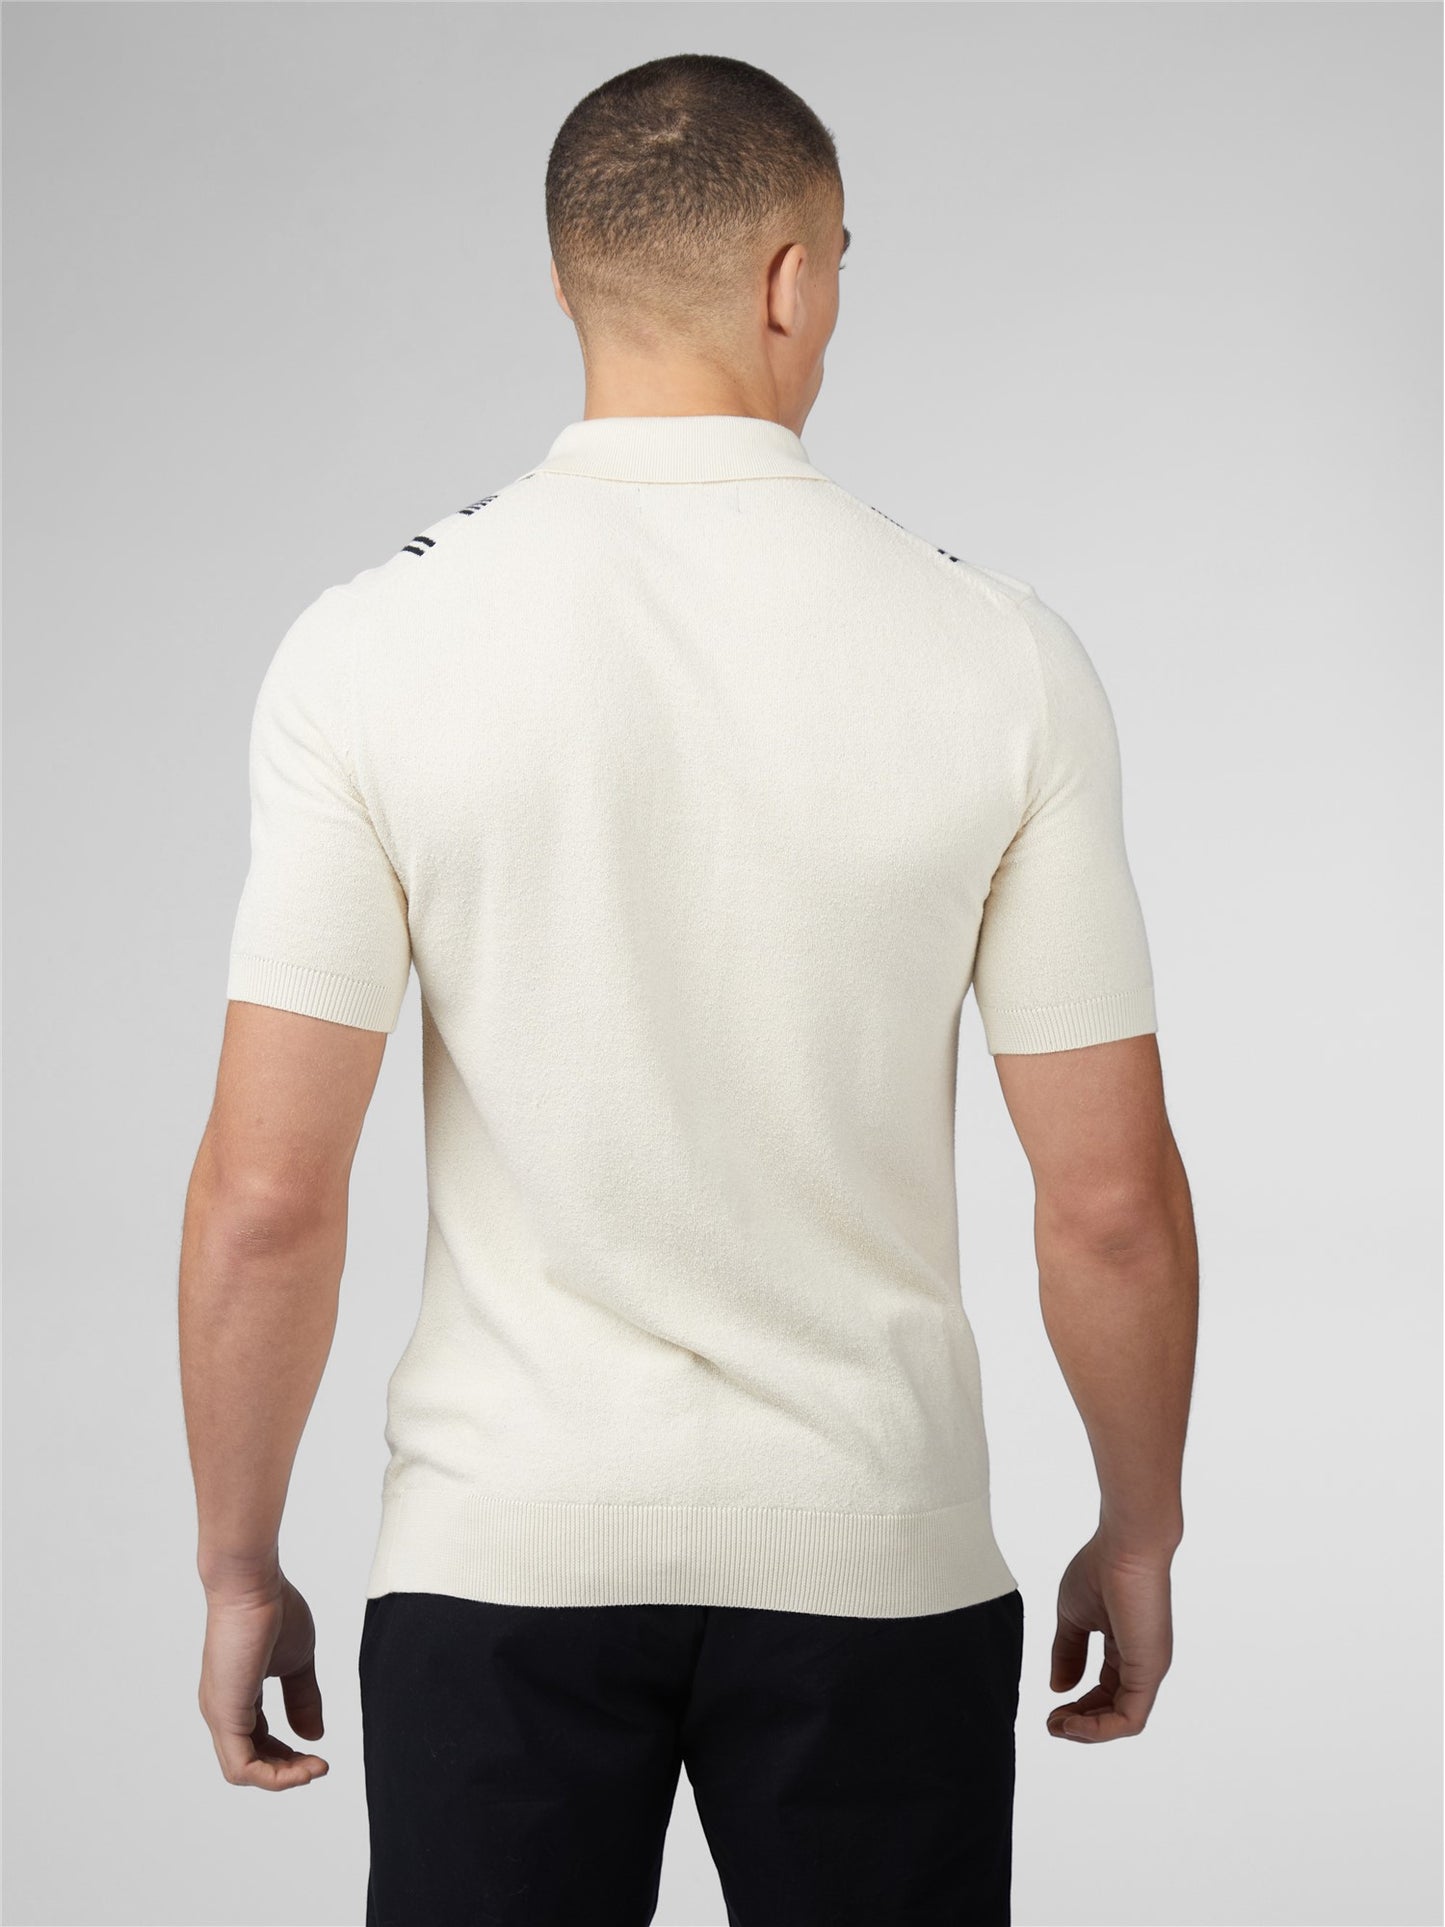 Ben Sherman Men's 0075850 SS Crinkle Cotton Stripe Polo Shirt Ivory